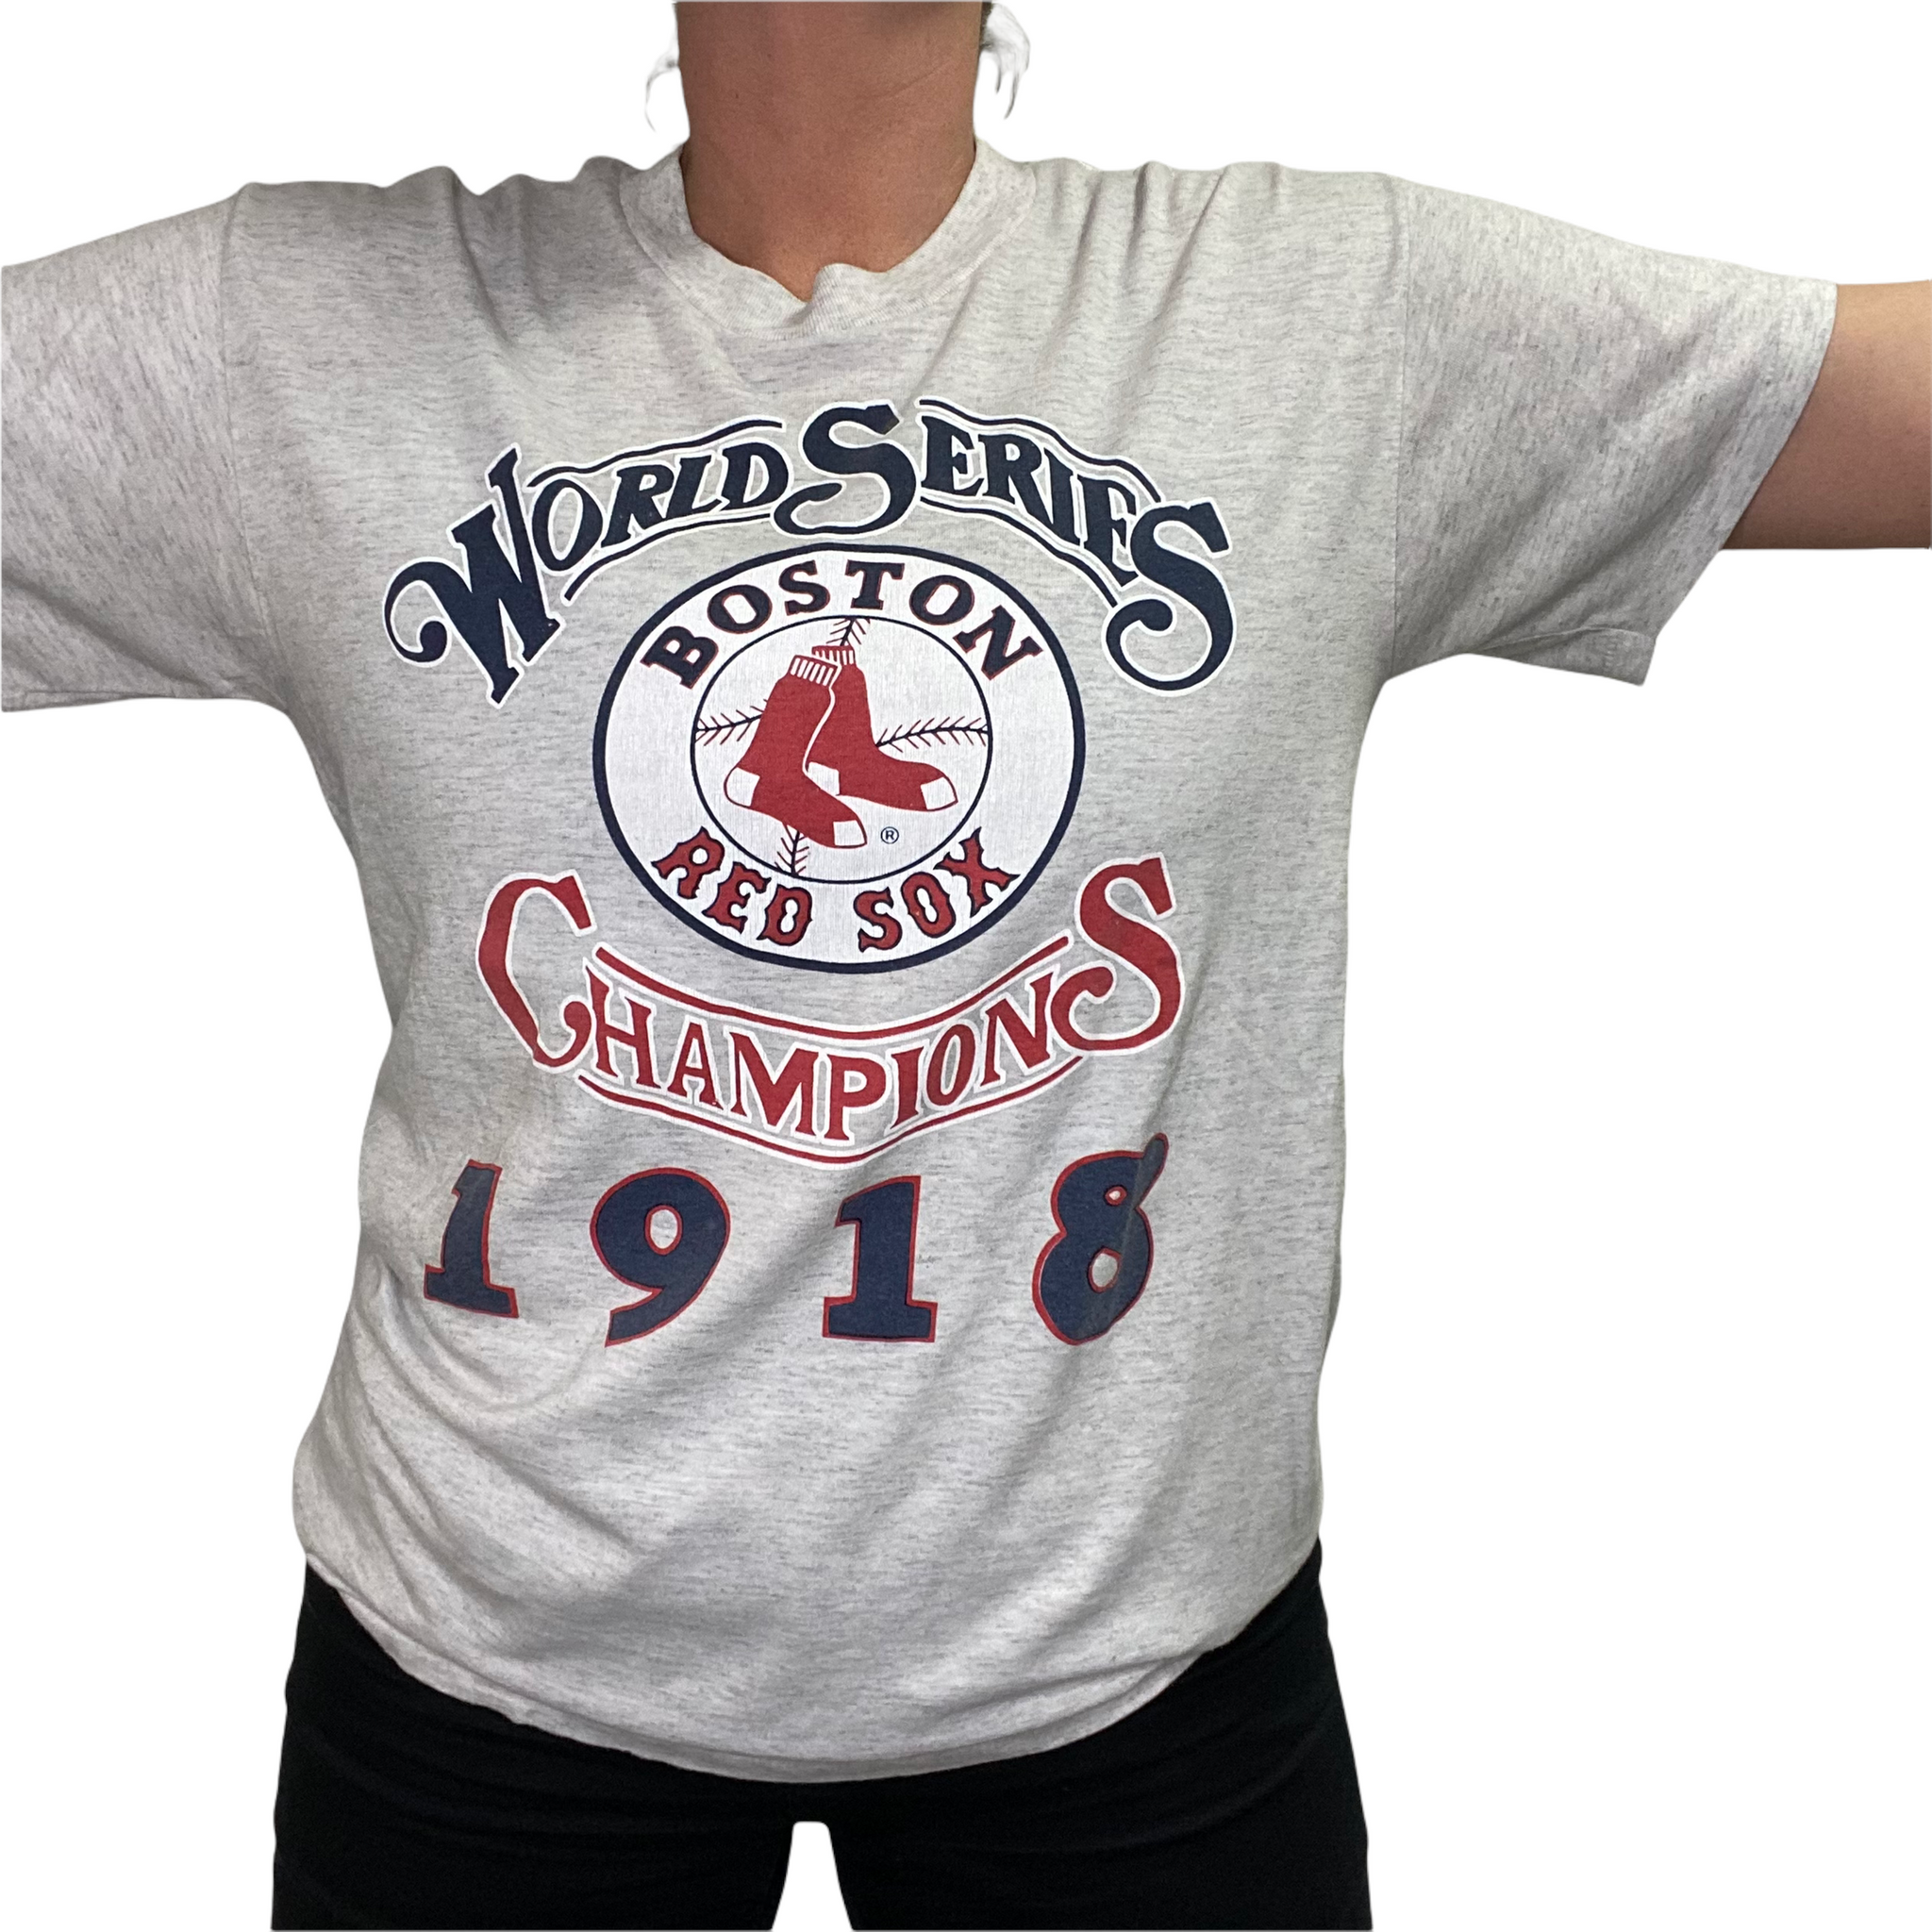 Men's New Era White Boston Red Sox Historical Championship T-Shirt